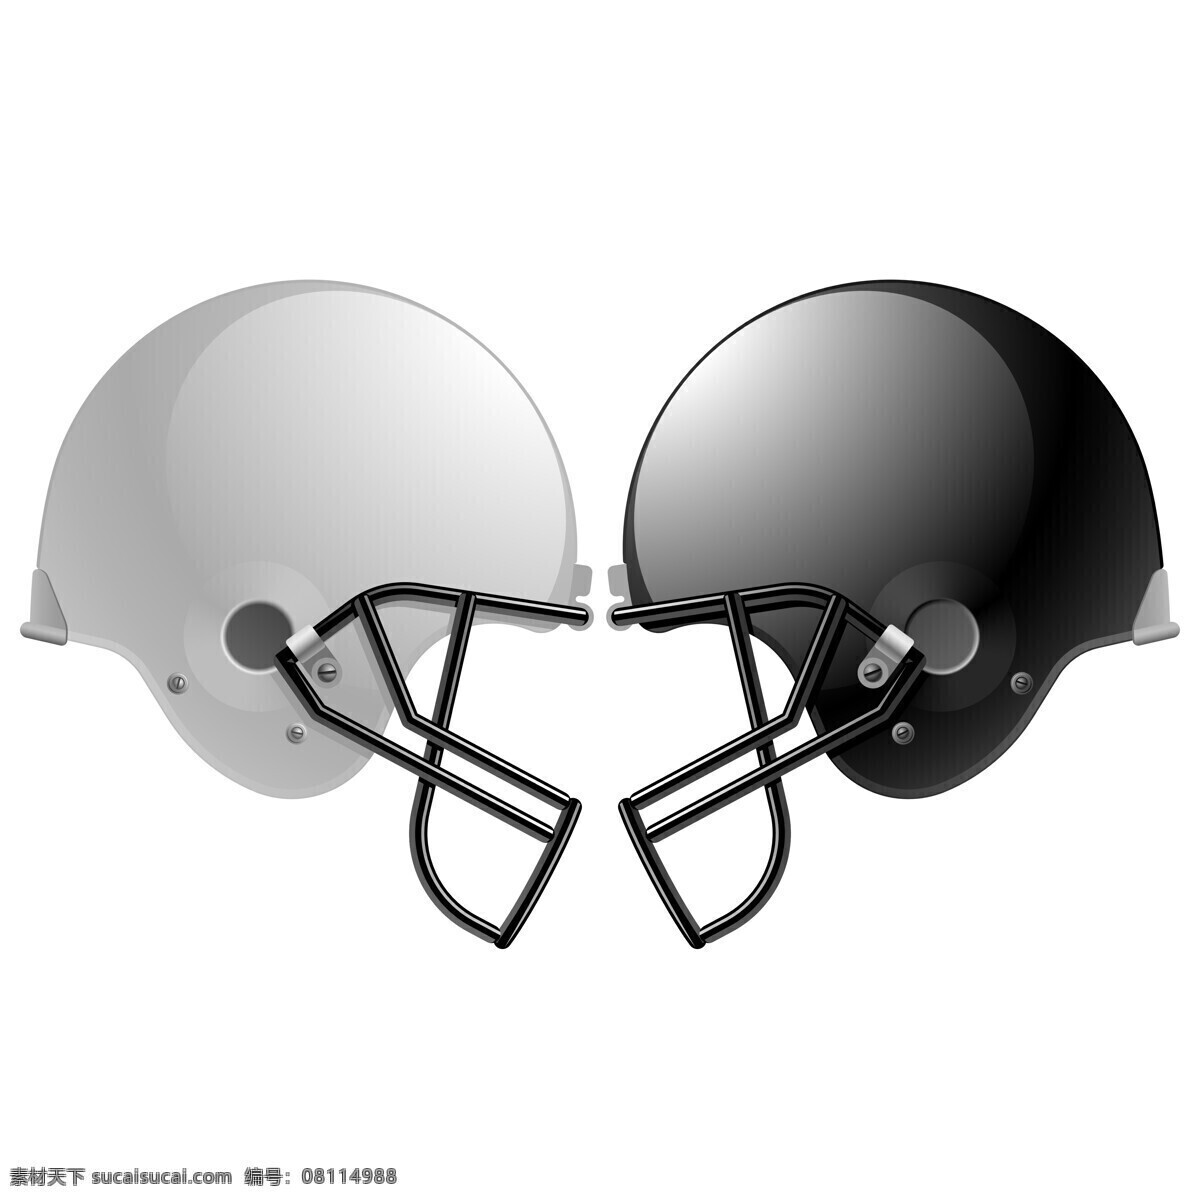 橄榄球 头盔 橄榄球头盔 钢盔帽 帽子 安全帽 生活用品 生活百科